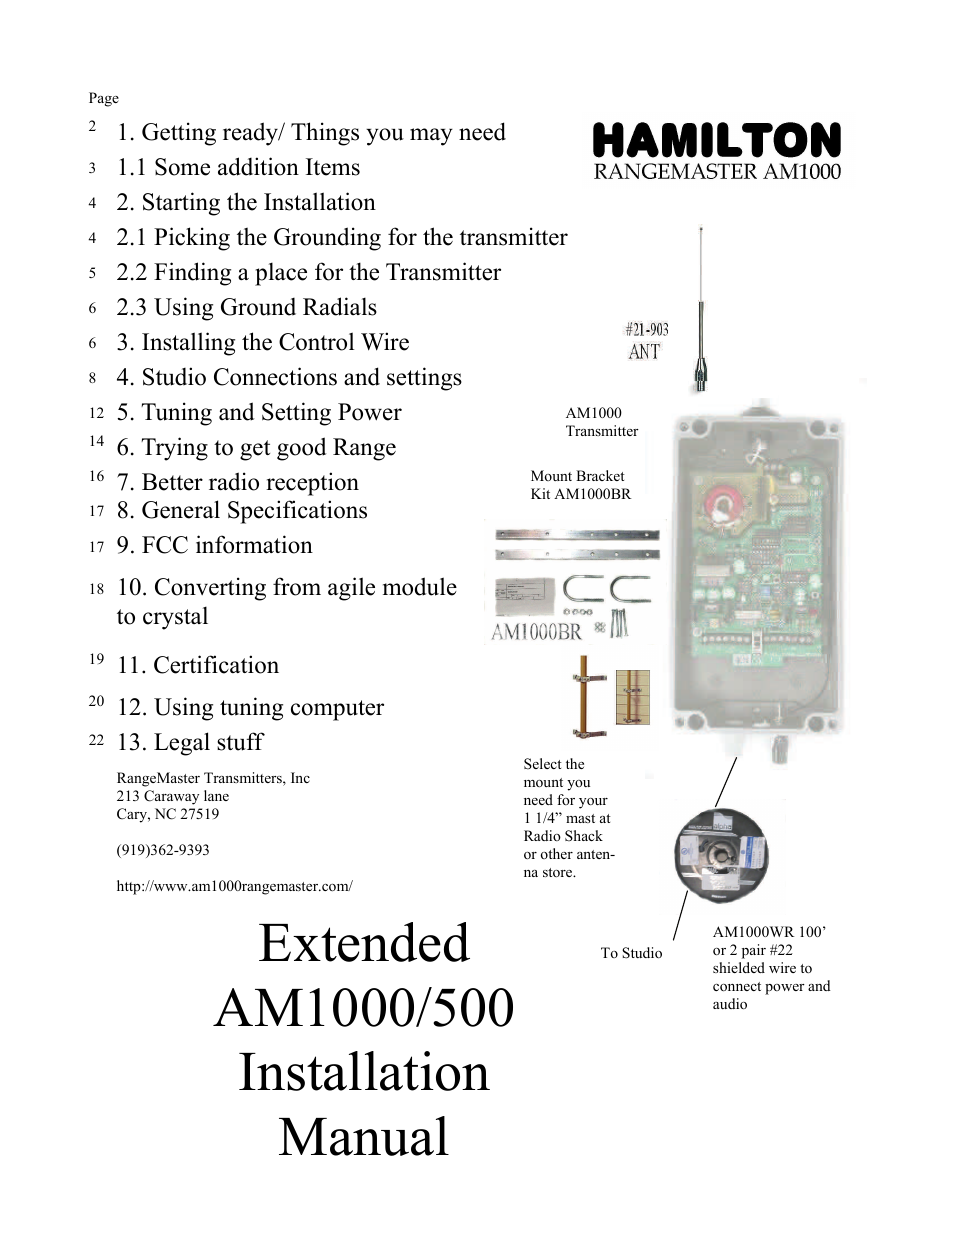 HAMILTON AM1000